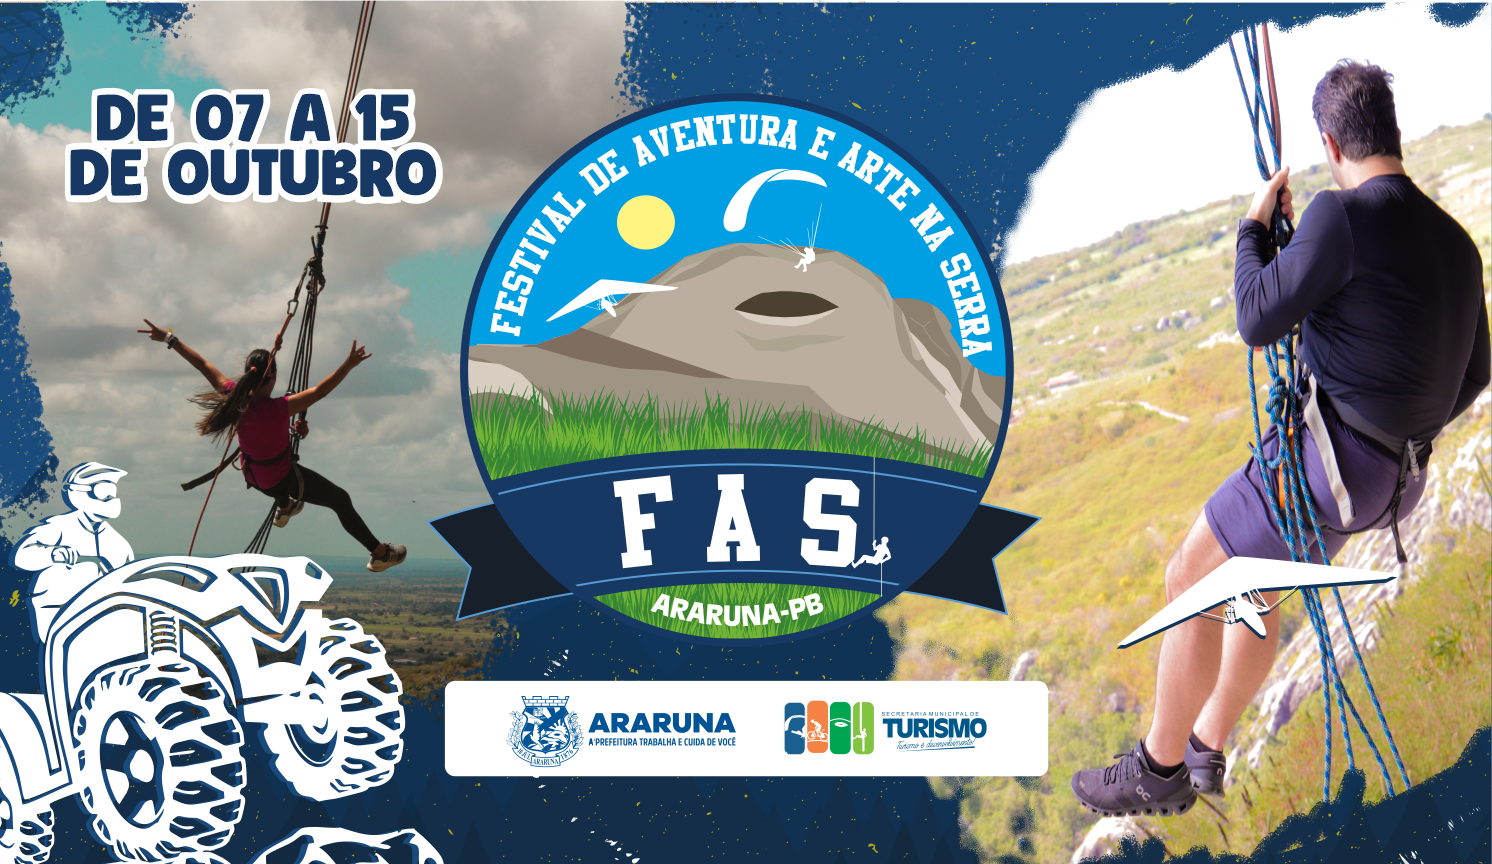 Araruna se prepara para 4ª edição do Festival de Aventura e Arte na Serra - FAS 2023